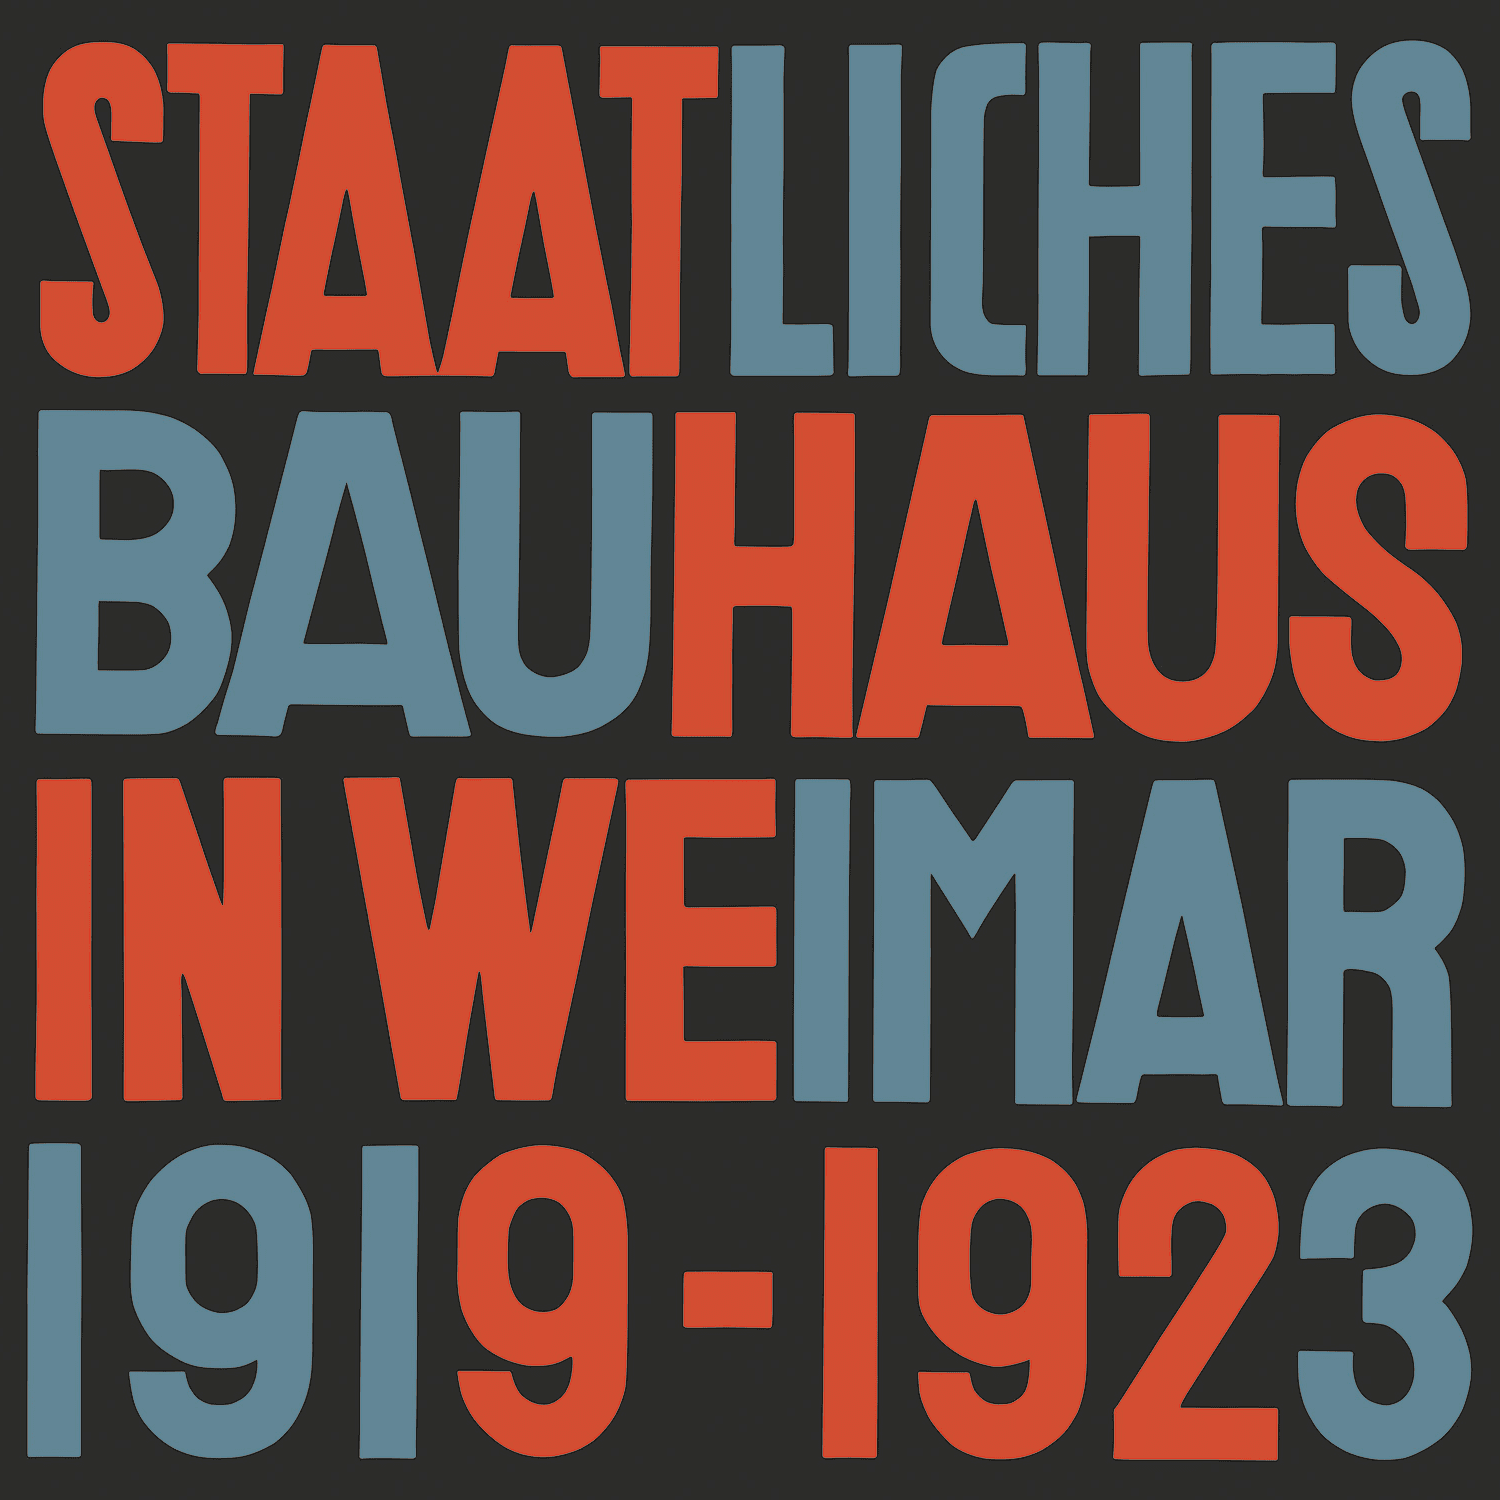 魏玛的国立包豪斯 1919-1923年的图片
